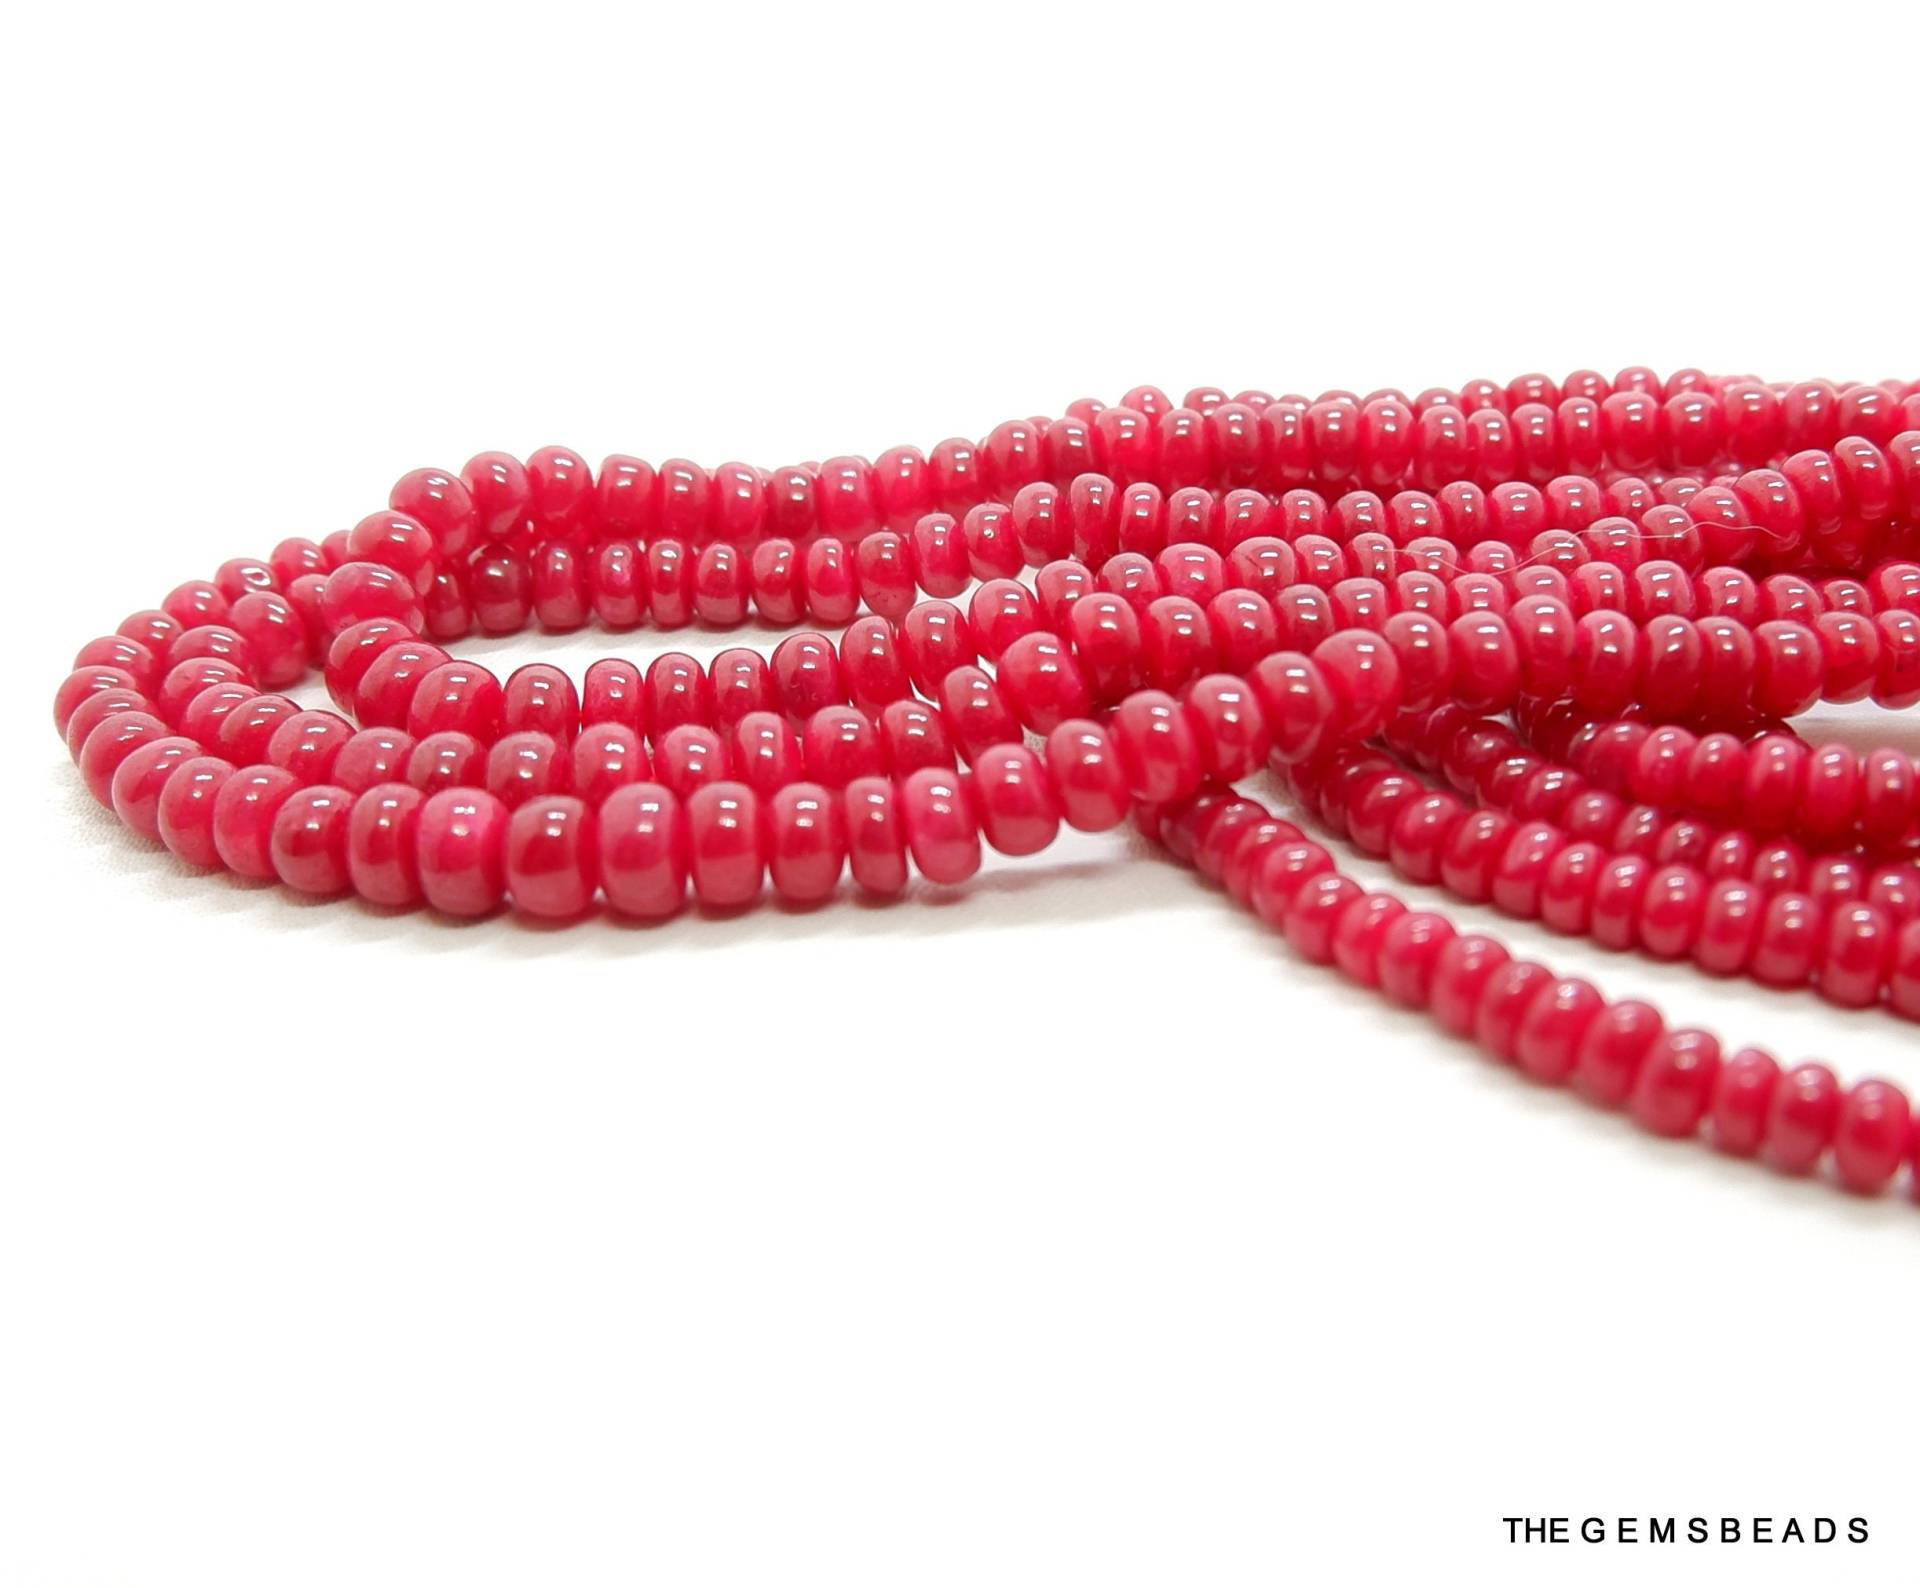 3 Strang Natürliche Mozambique Ruby Perlen Halskette, Feinste Natürliche Rubin Perlen, Bis 5 Mm 45 cm Länge, Erhalten Sie 70% Auf Brautschmuck von THEGEMSBEADS